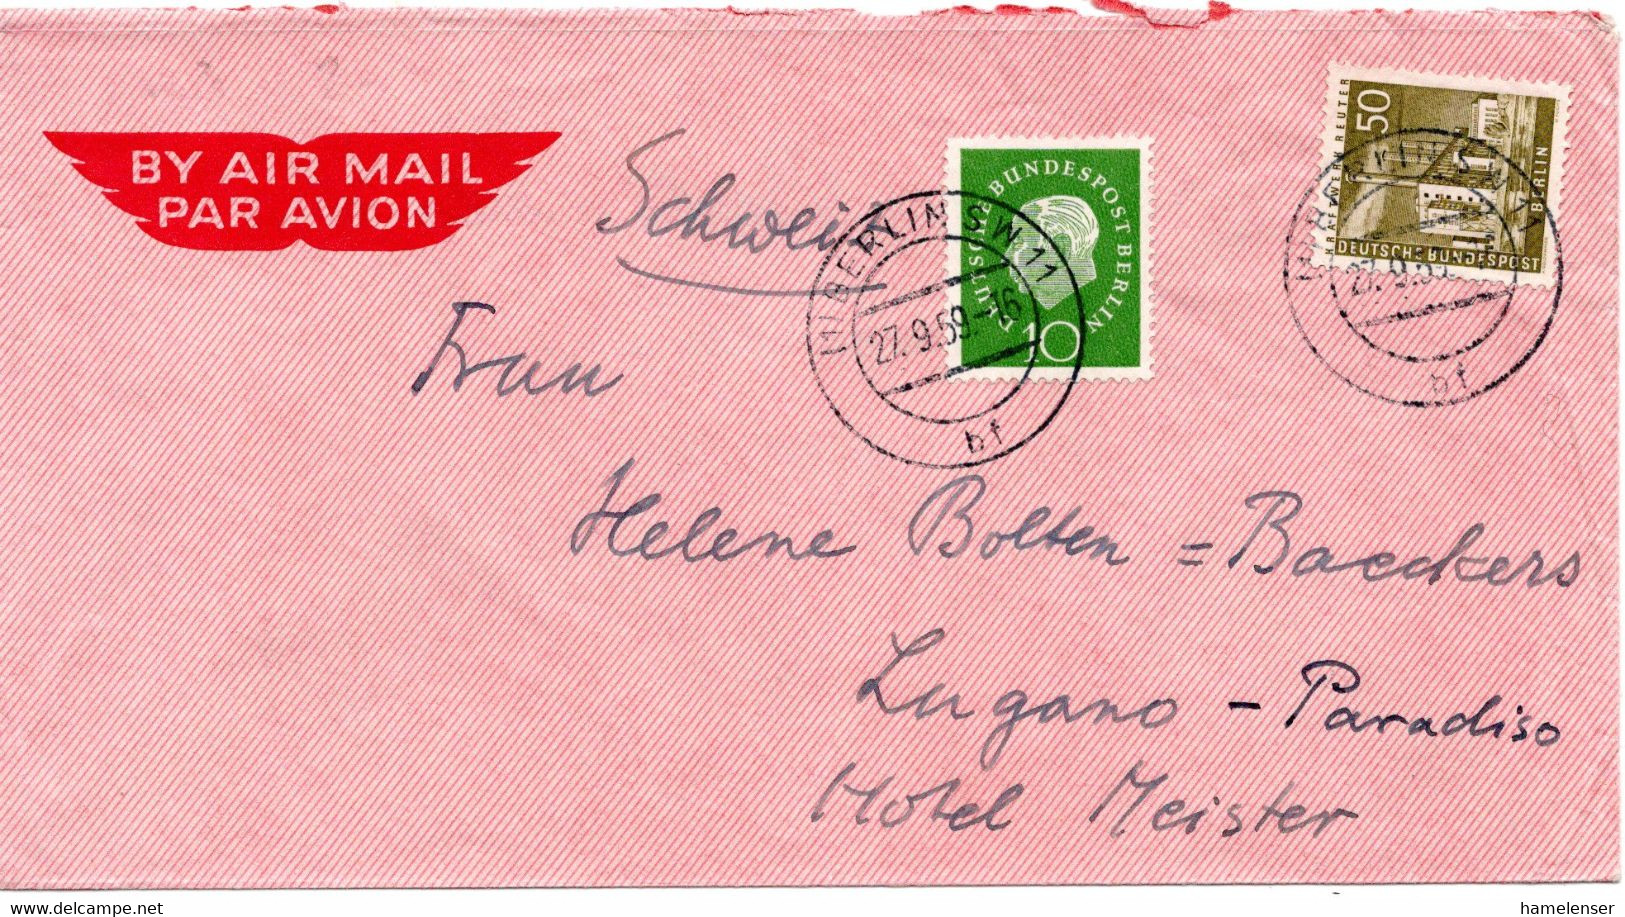 56811 - Berlin - 1959 - 50Pfg. Bauten MiF A LpBf BERLIN -> Schweiz - Cartas & Documentos